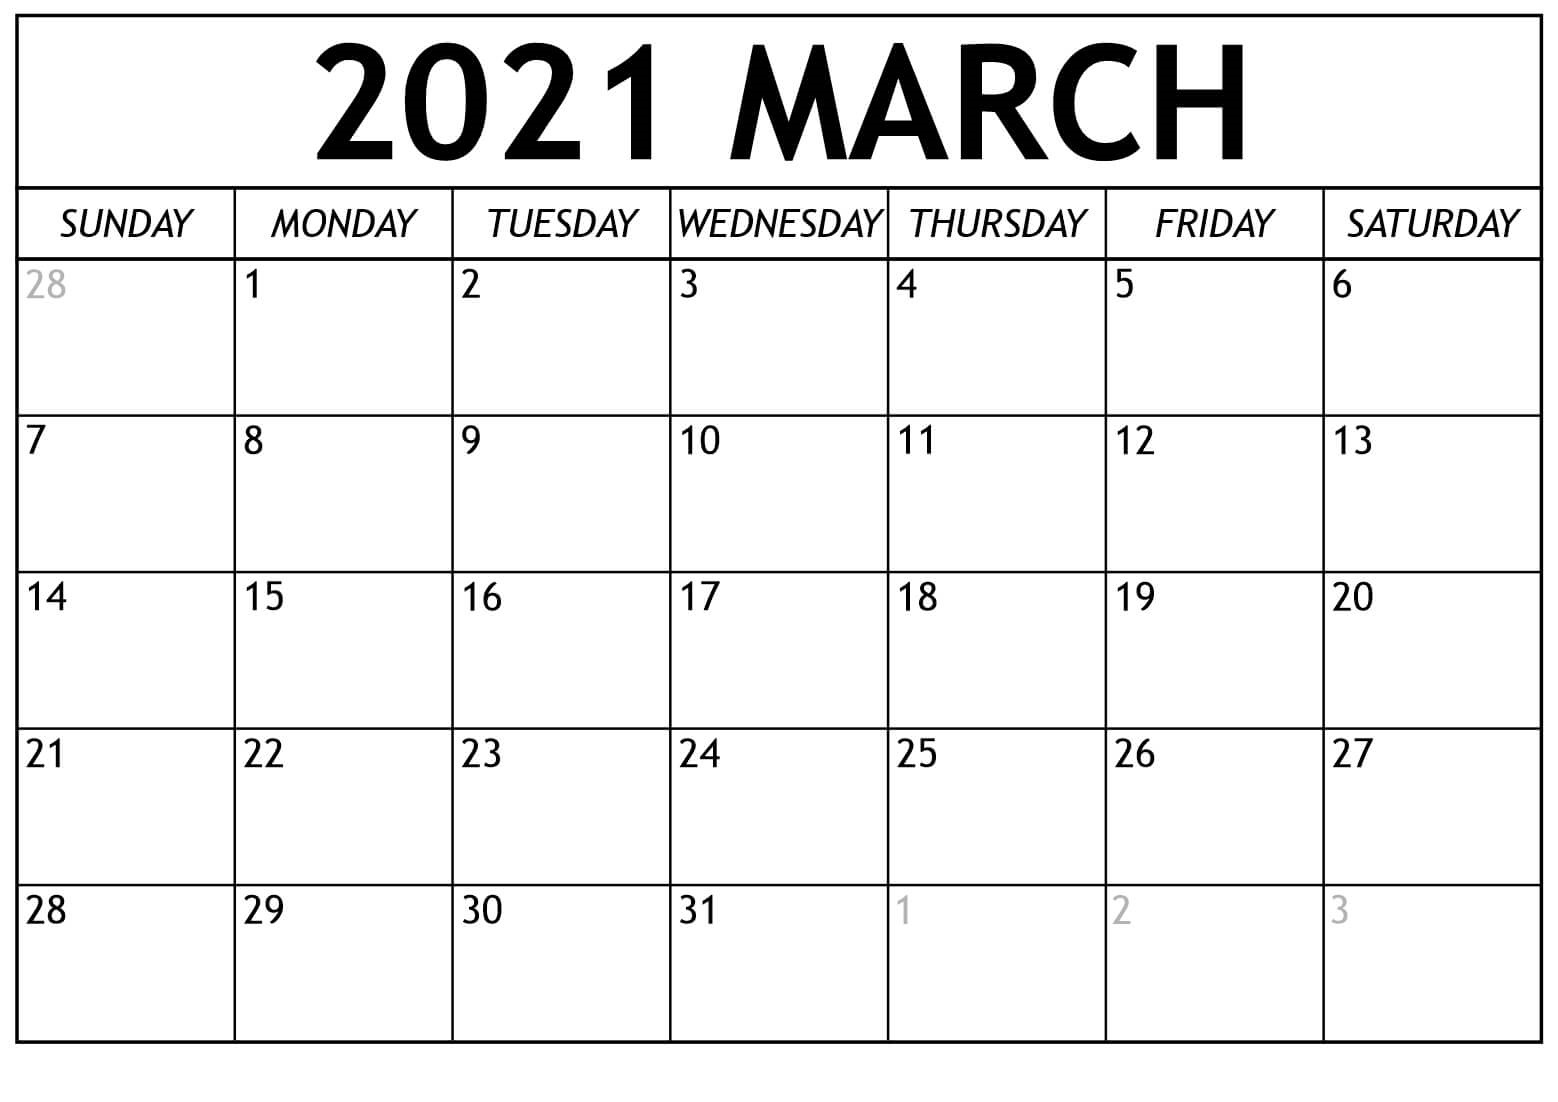 iPhone March Calendar 2021 Wallpaper